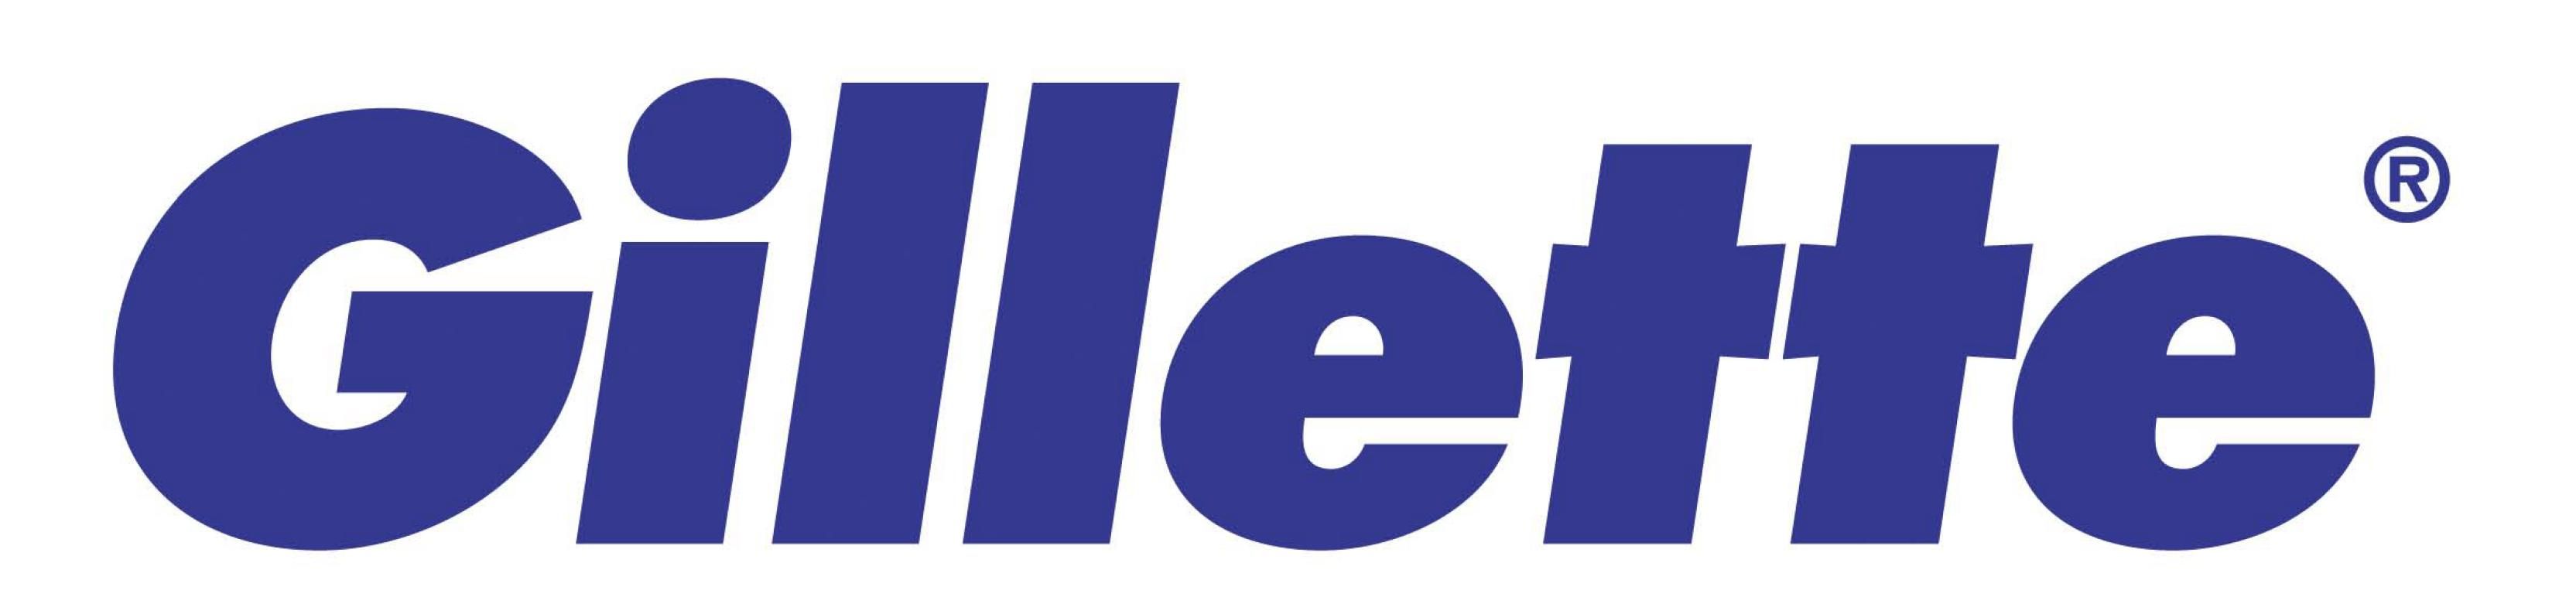 Gillette Logo PNG - 176235